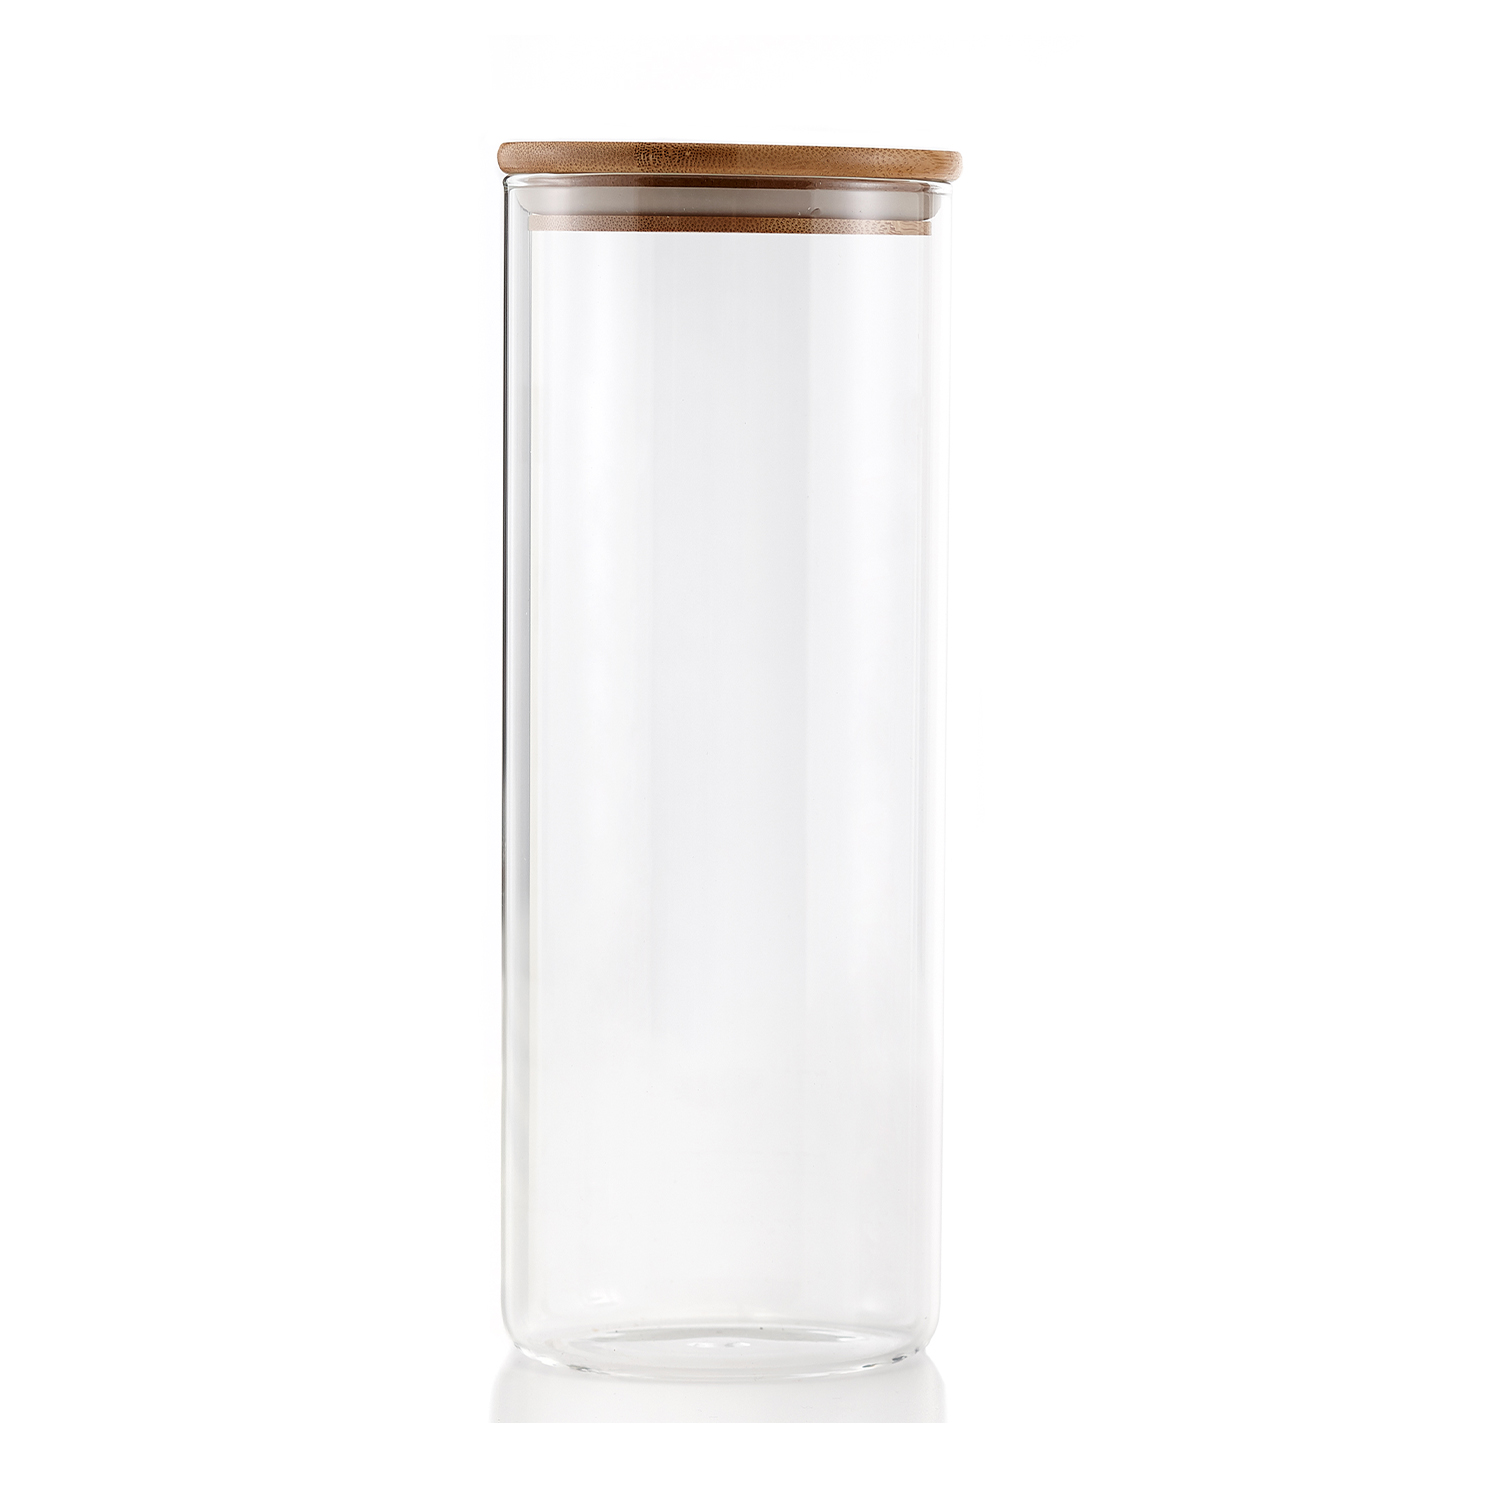 Jarre en verre 1,7 L avec couvercle en bambou - Contenant de stockage